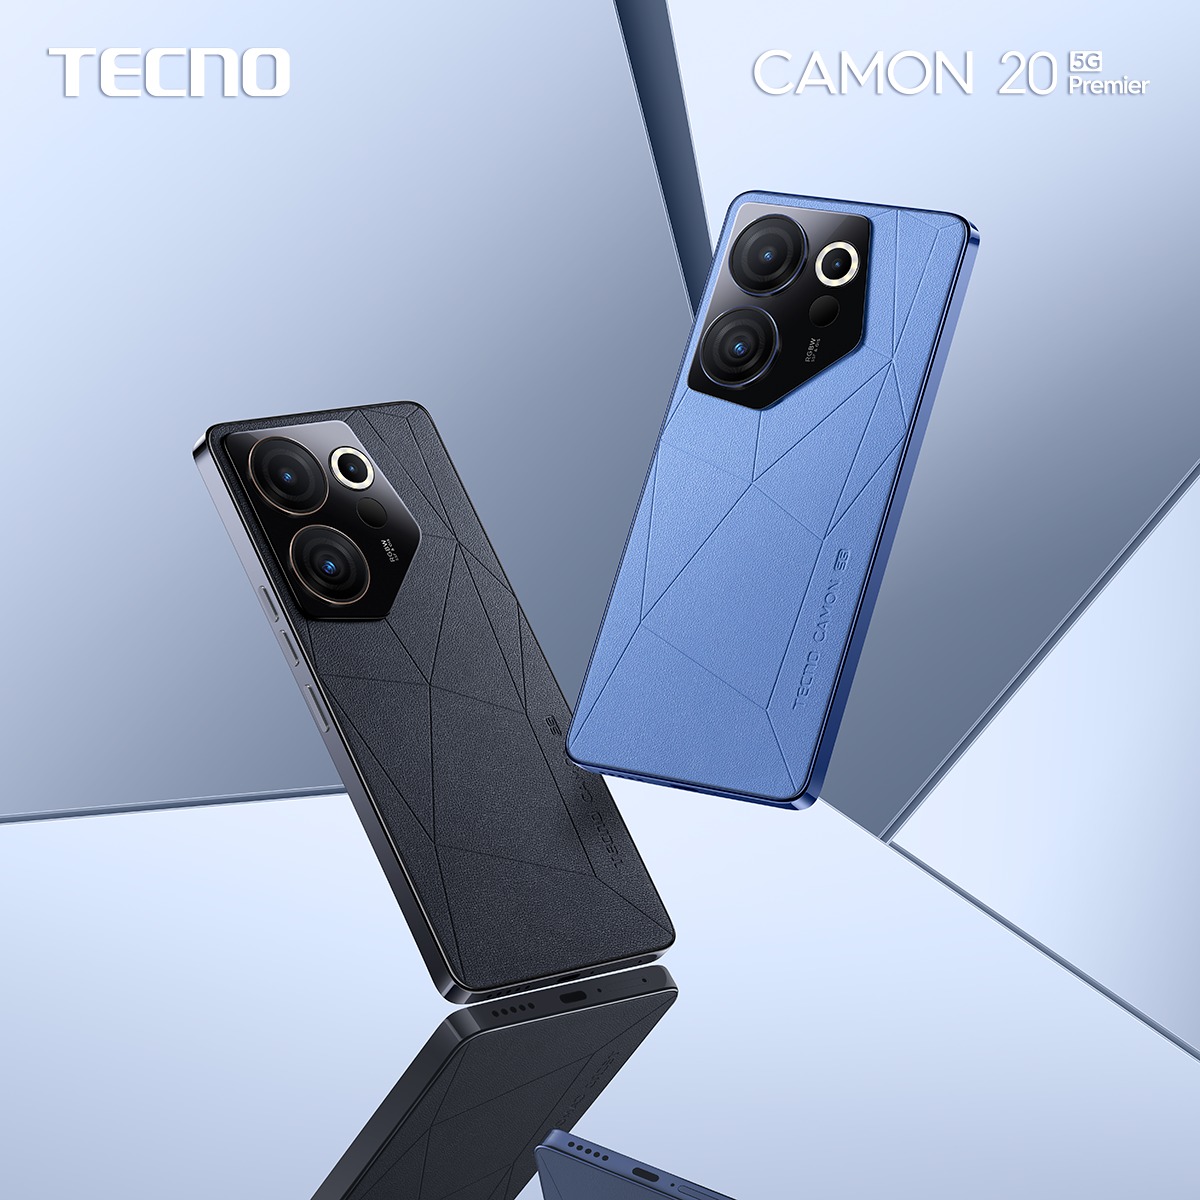 TECNO CAMON 20 es presentado en Colombia